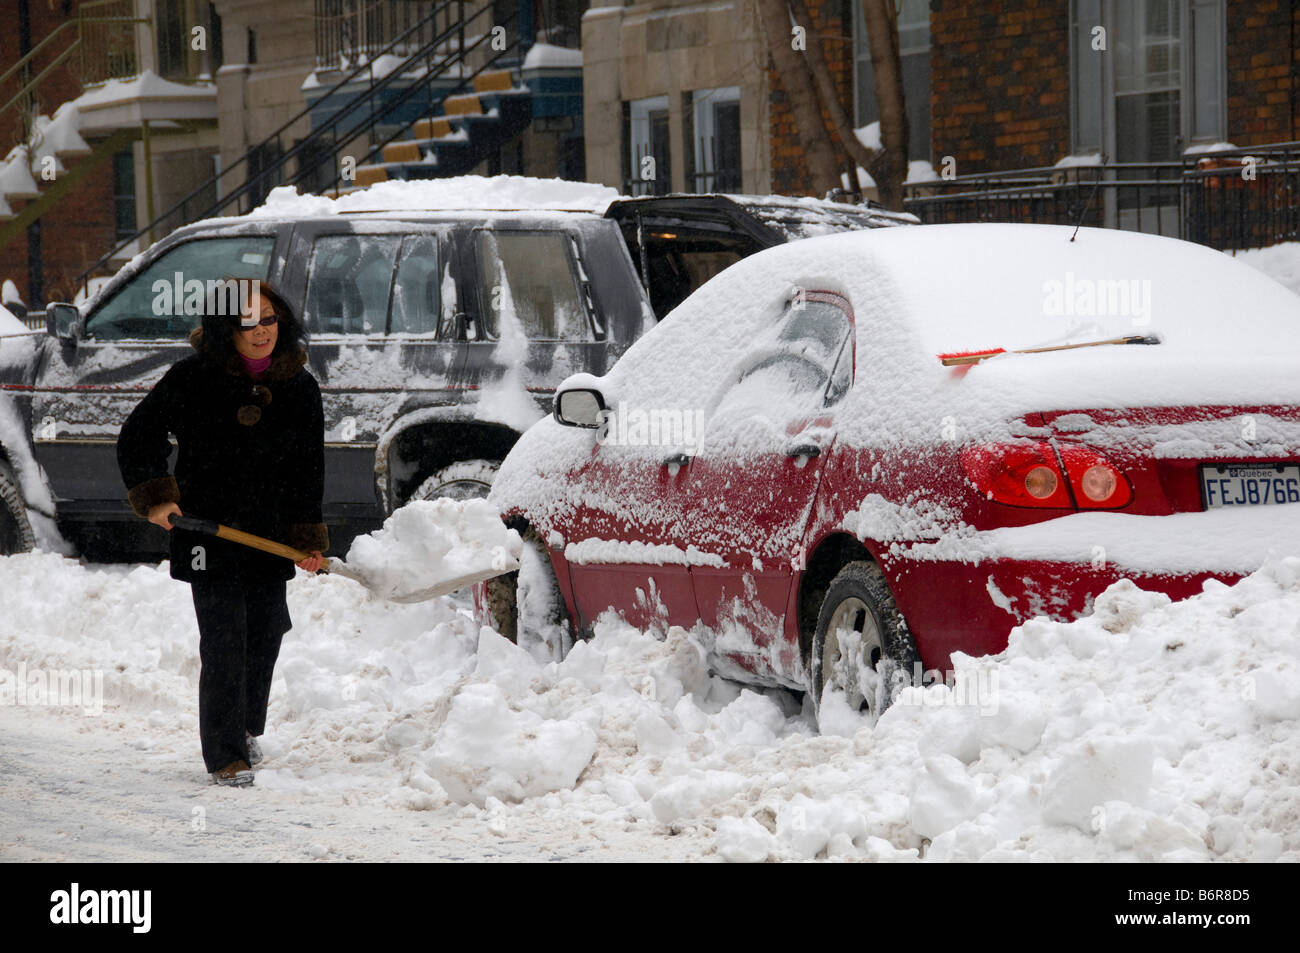 La montréalaise creuser hors de sa voiture après une tempête de neige Banque D'Images